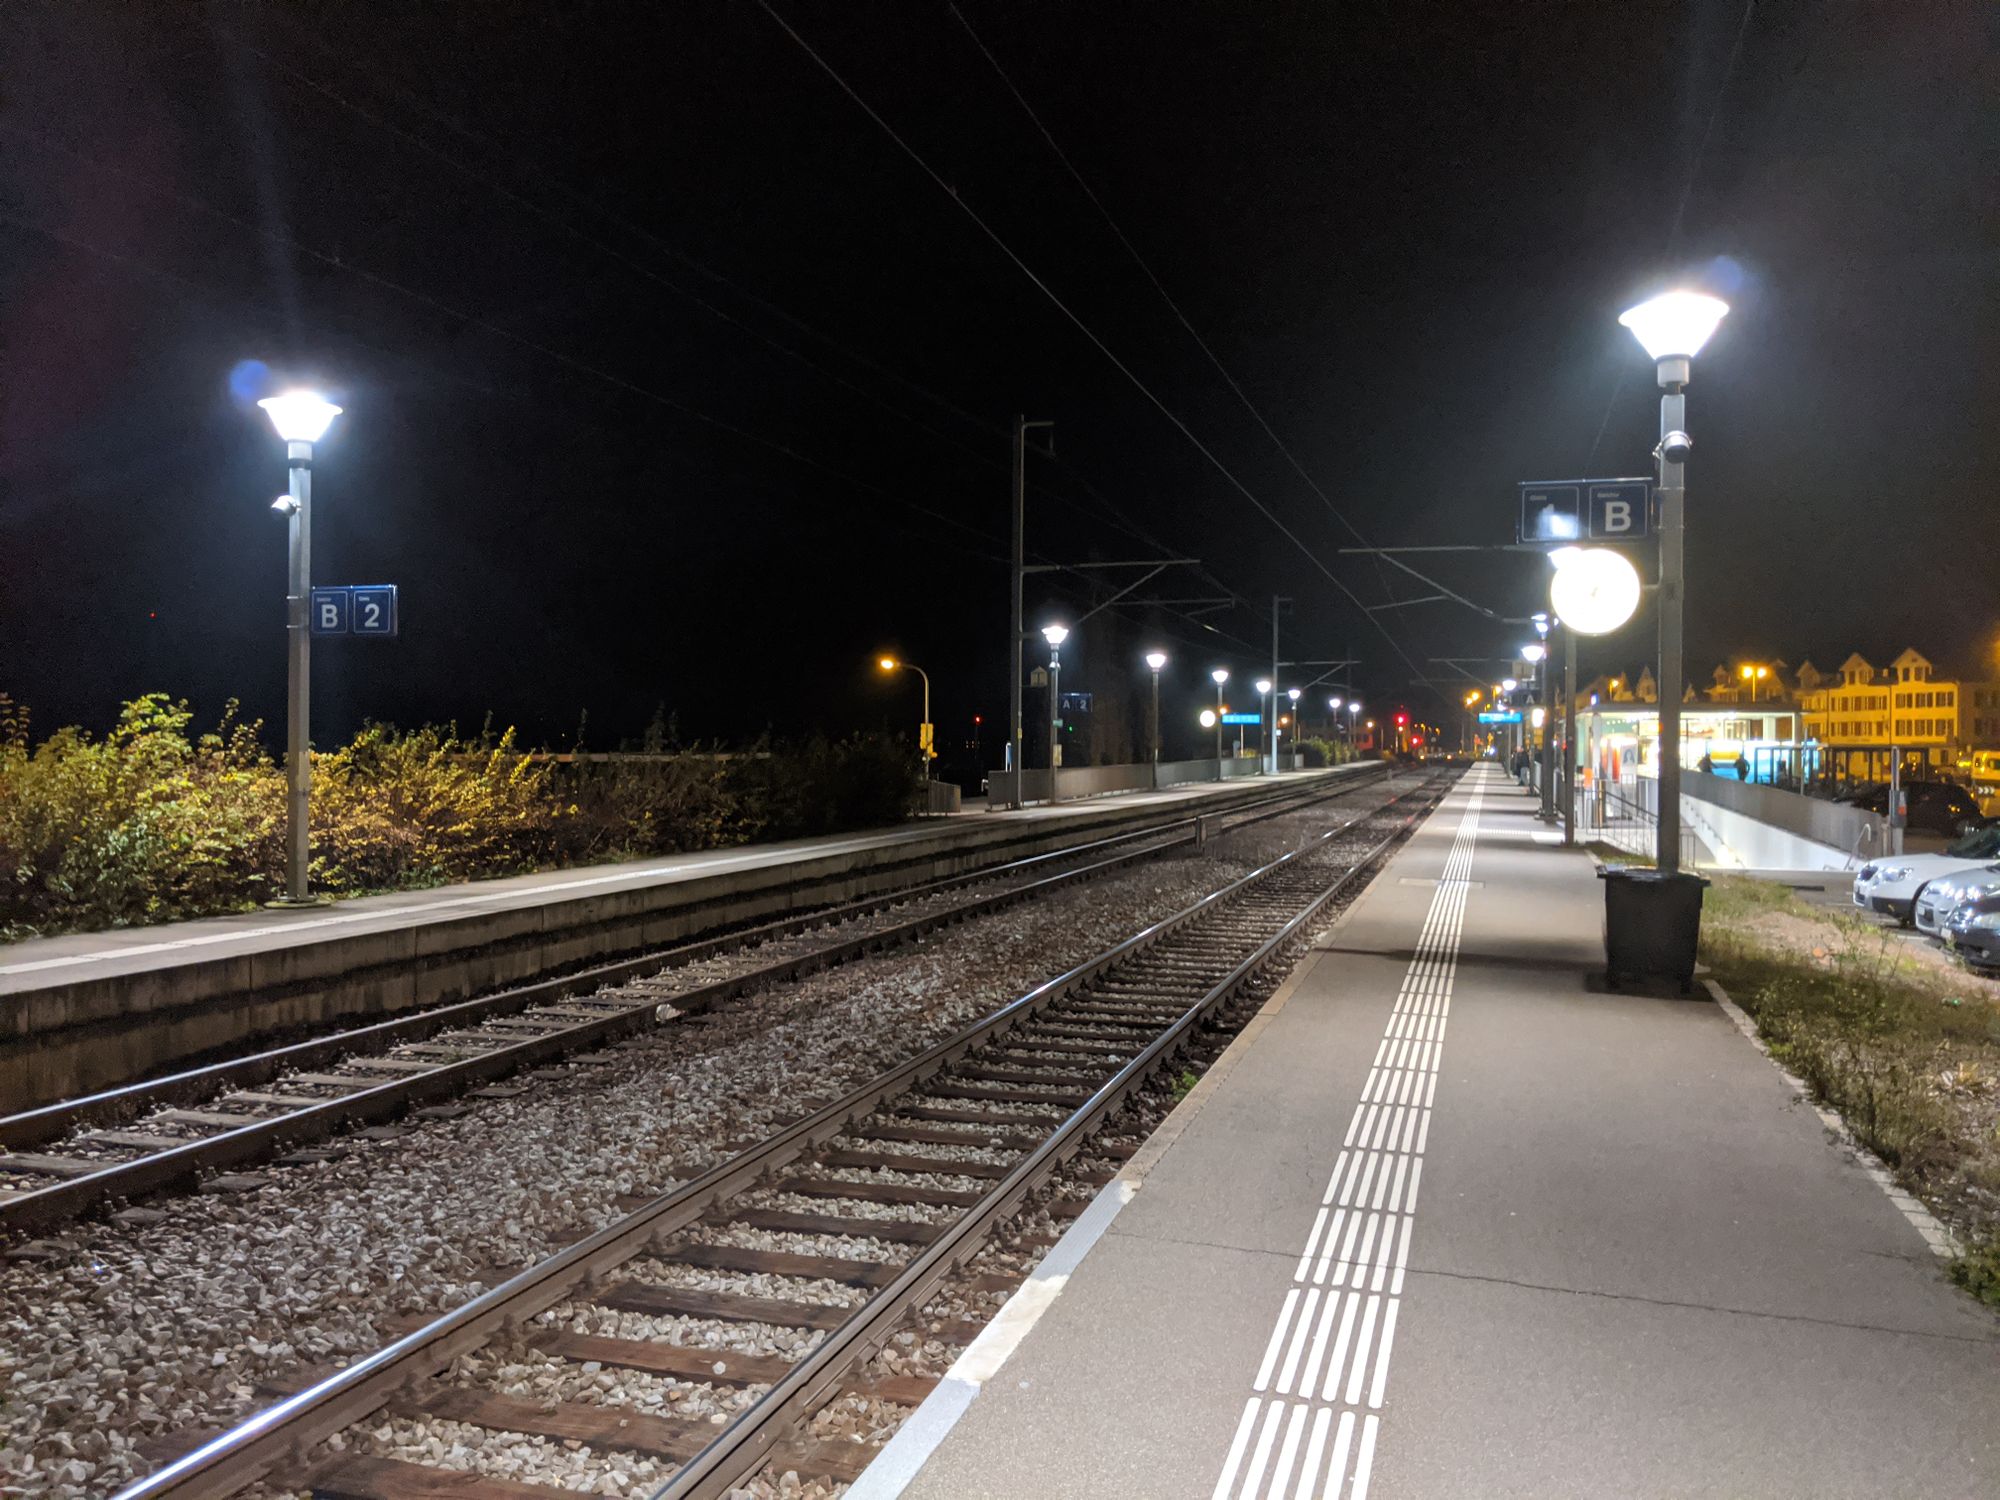 Schmerkner Bahnhof am morgen früh im 2019 (Foto: Thomas Müller, 8716.ch)